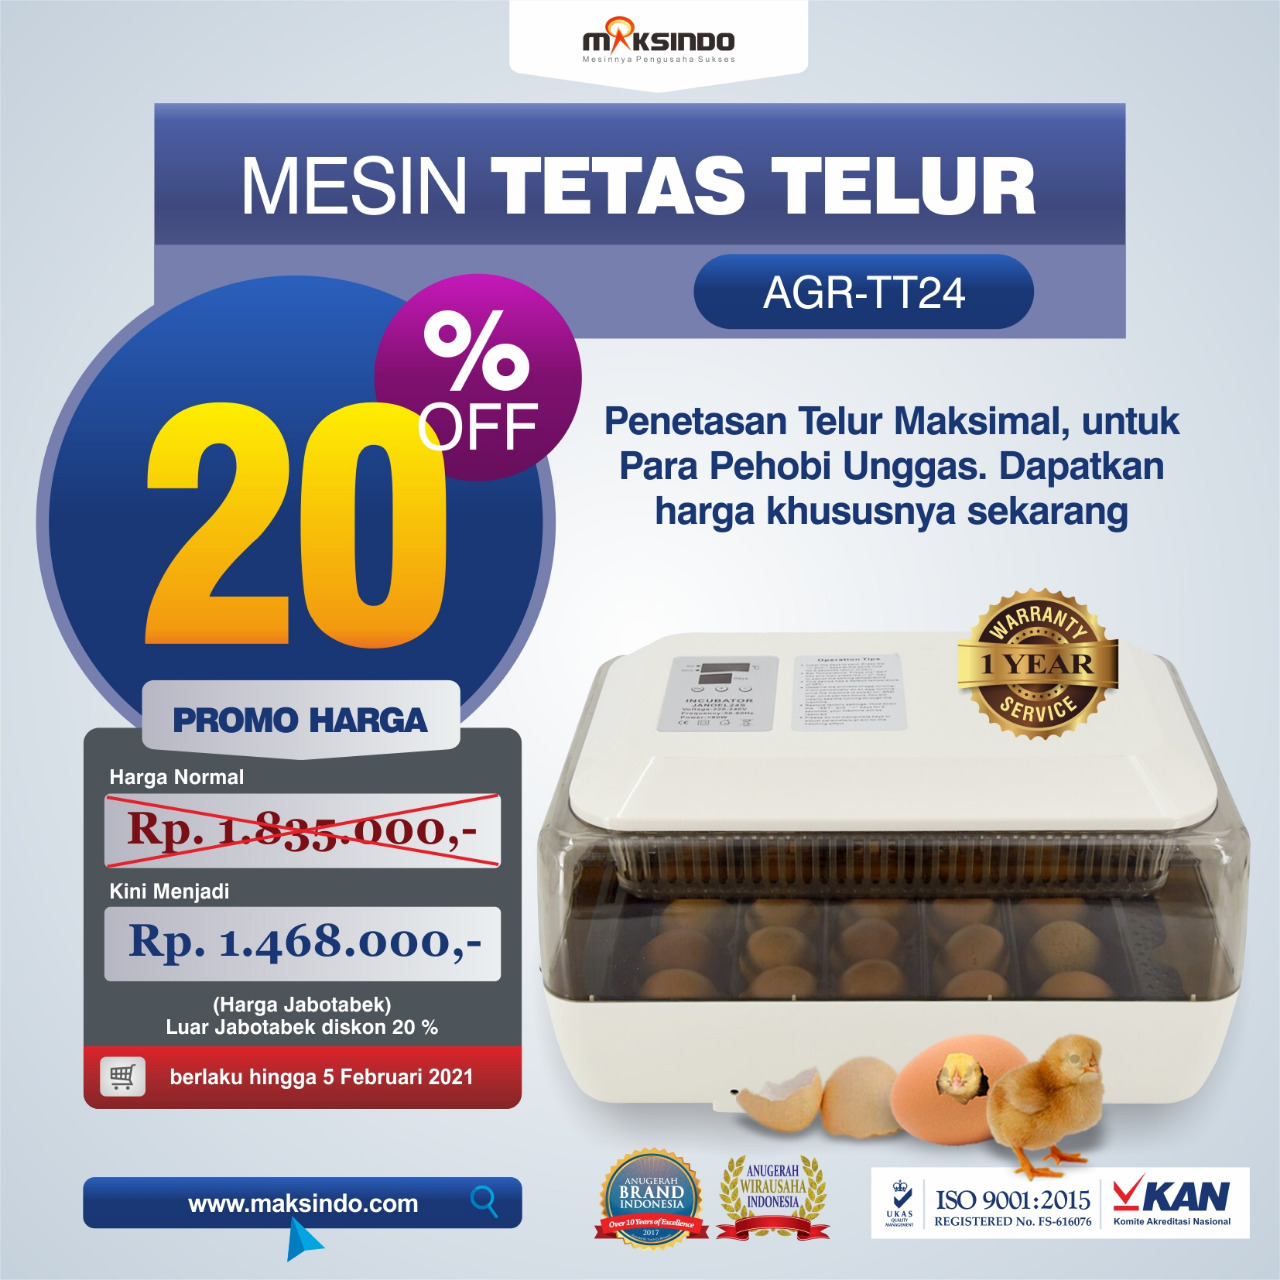 Jual Mesin Tetas Telur (AGR-TT24) di Semarang